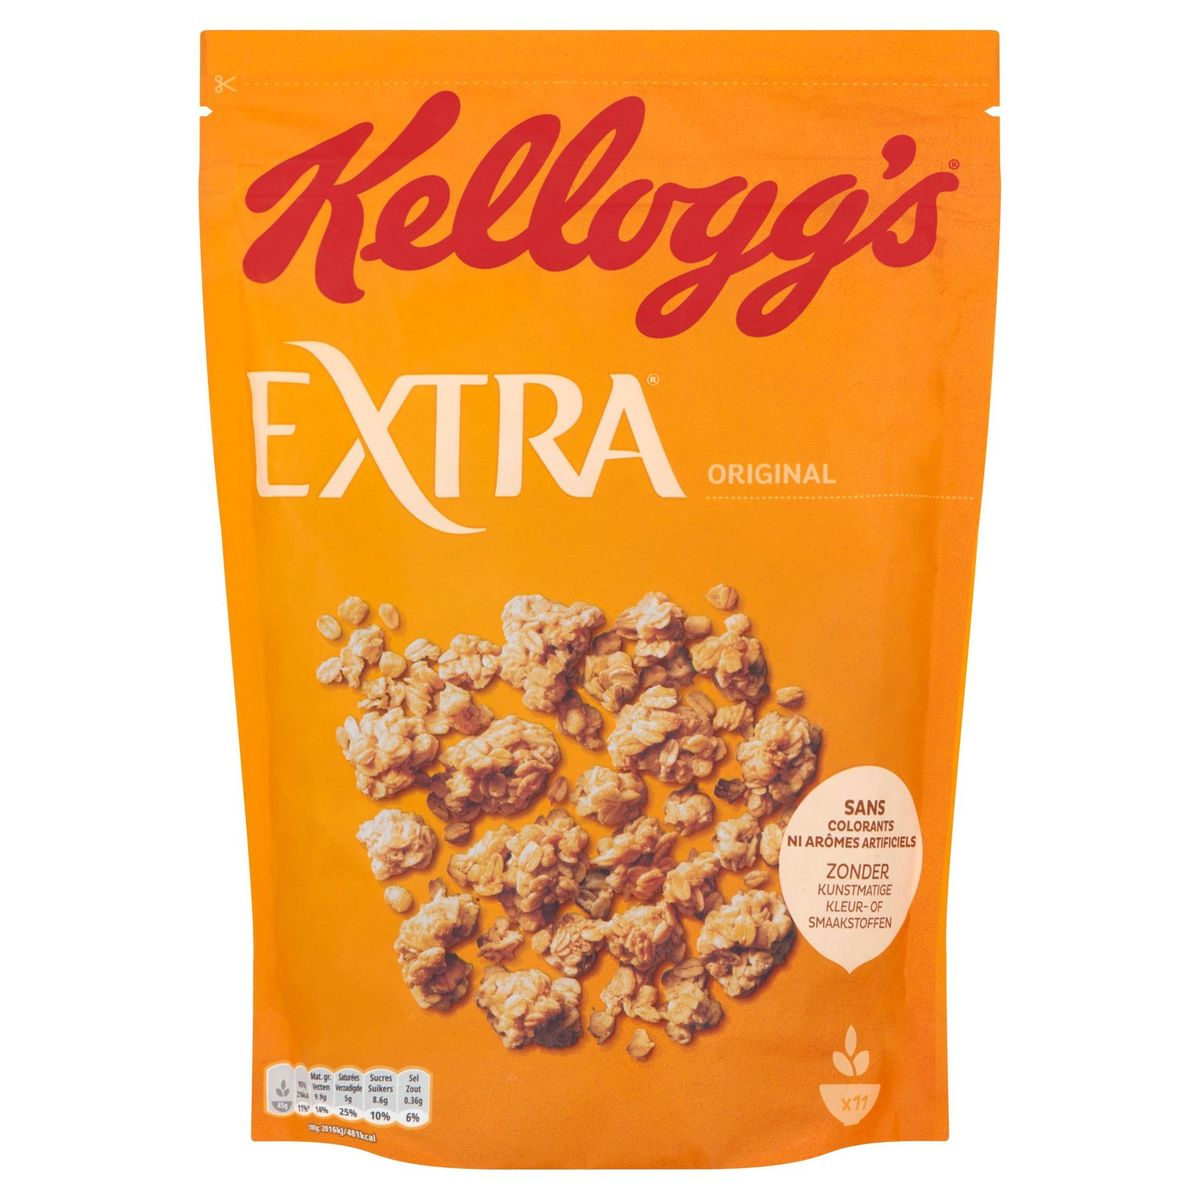 Kellogg's Extra Original 500 g